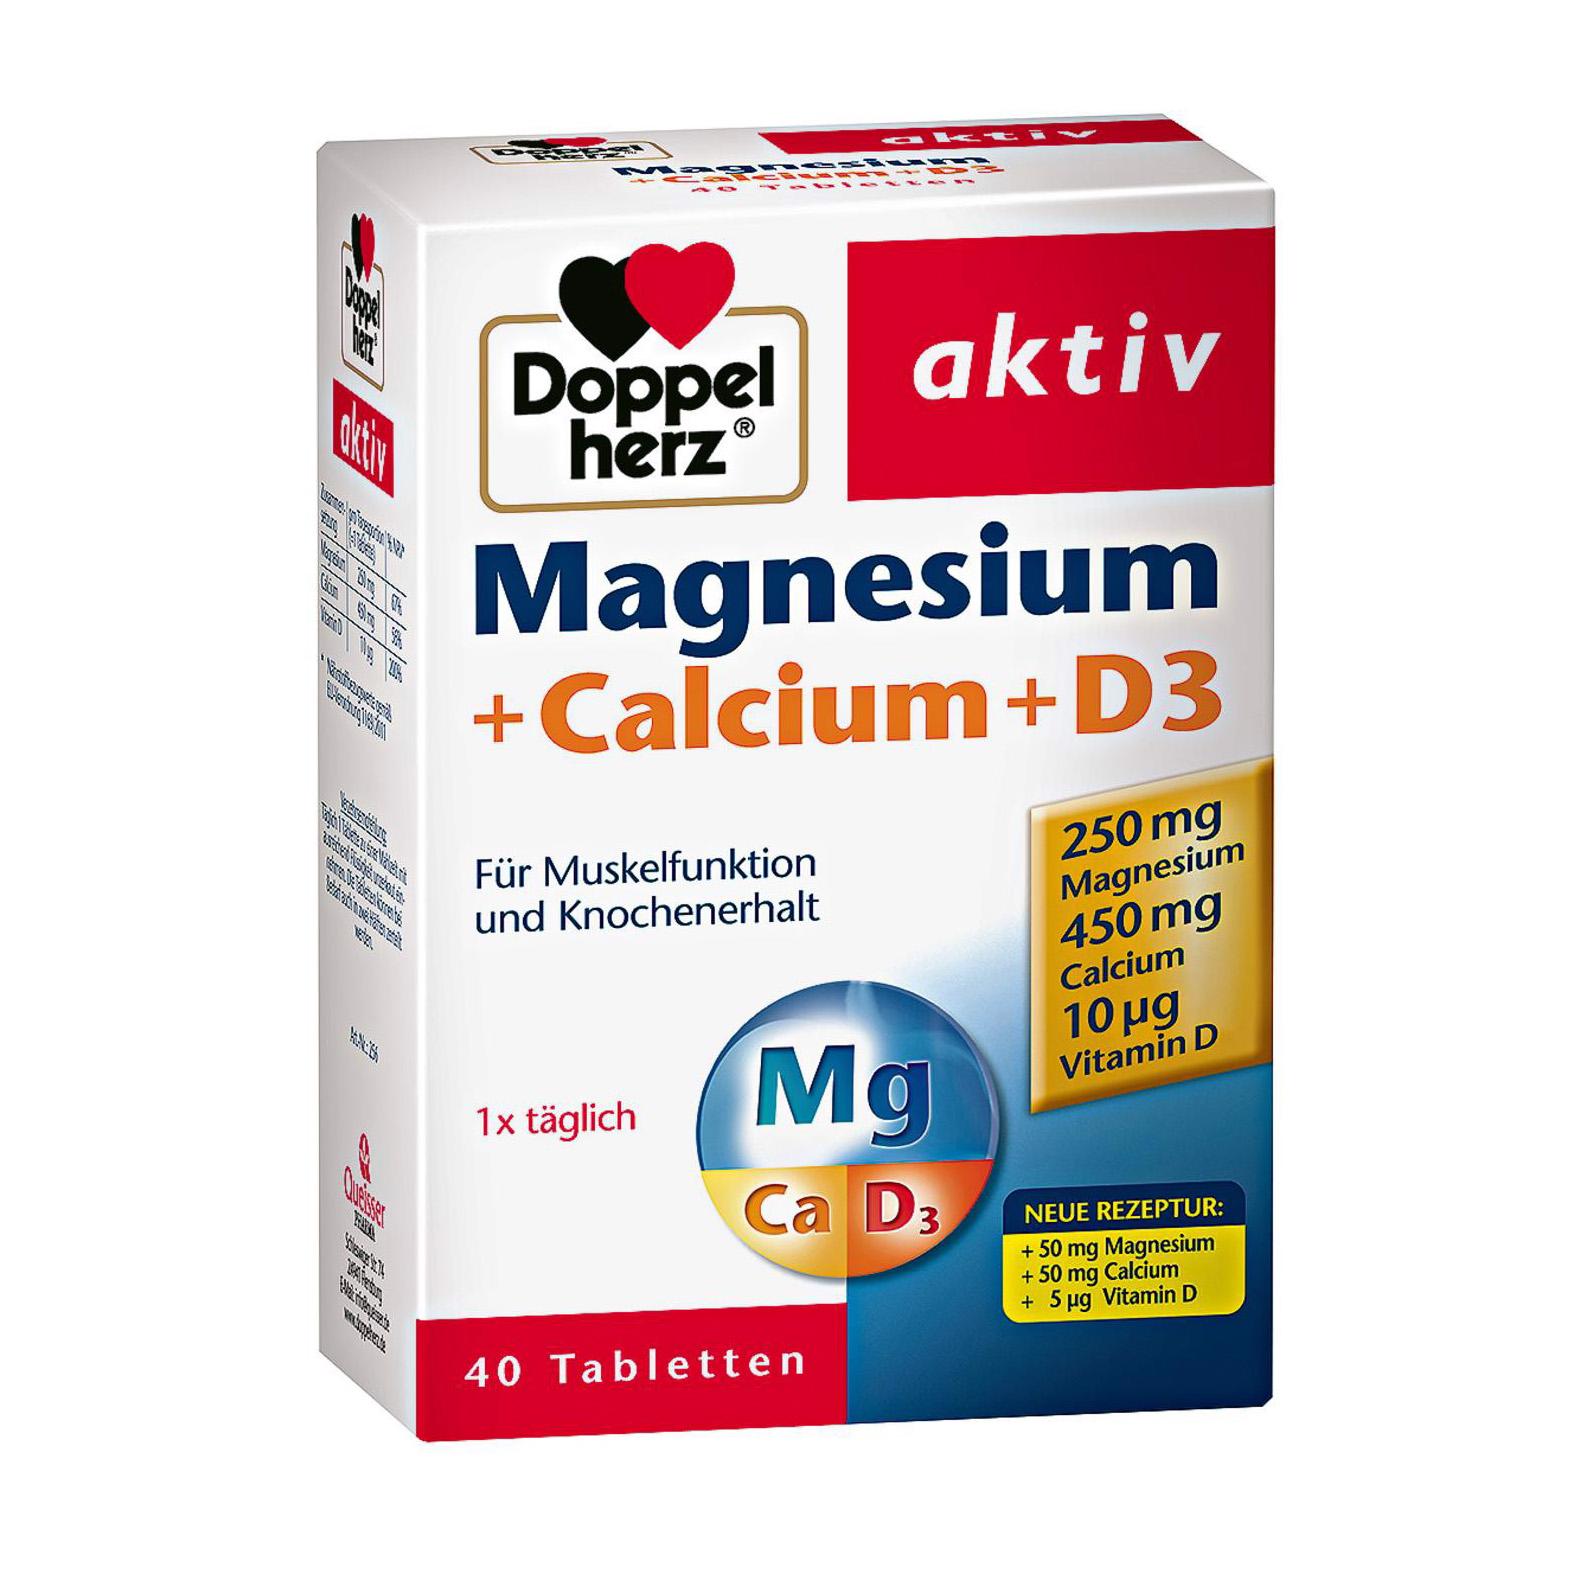 TPBVSK Magnesium + Calcium + D3 thương hiệu Doppelherz